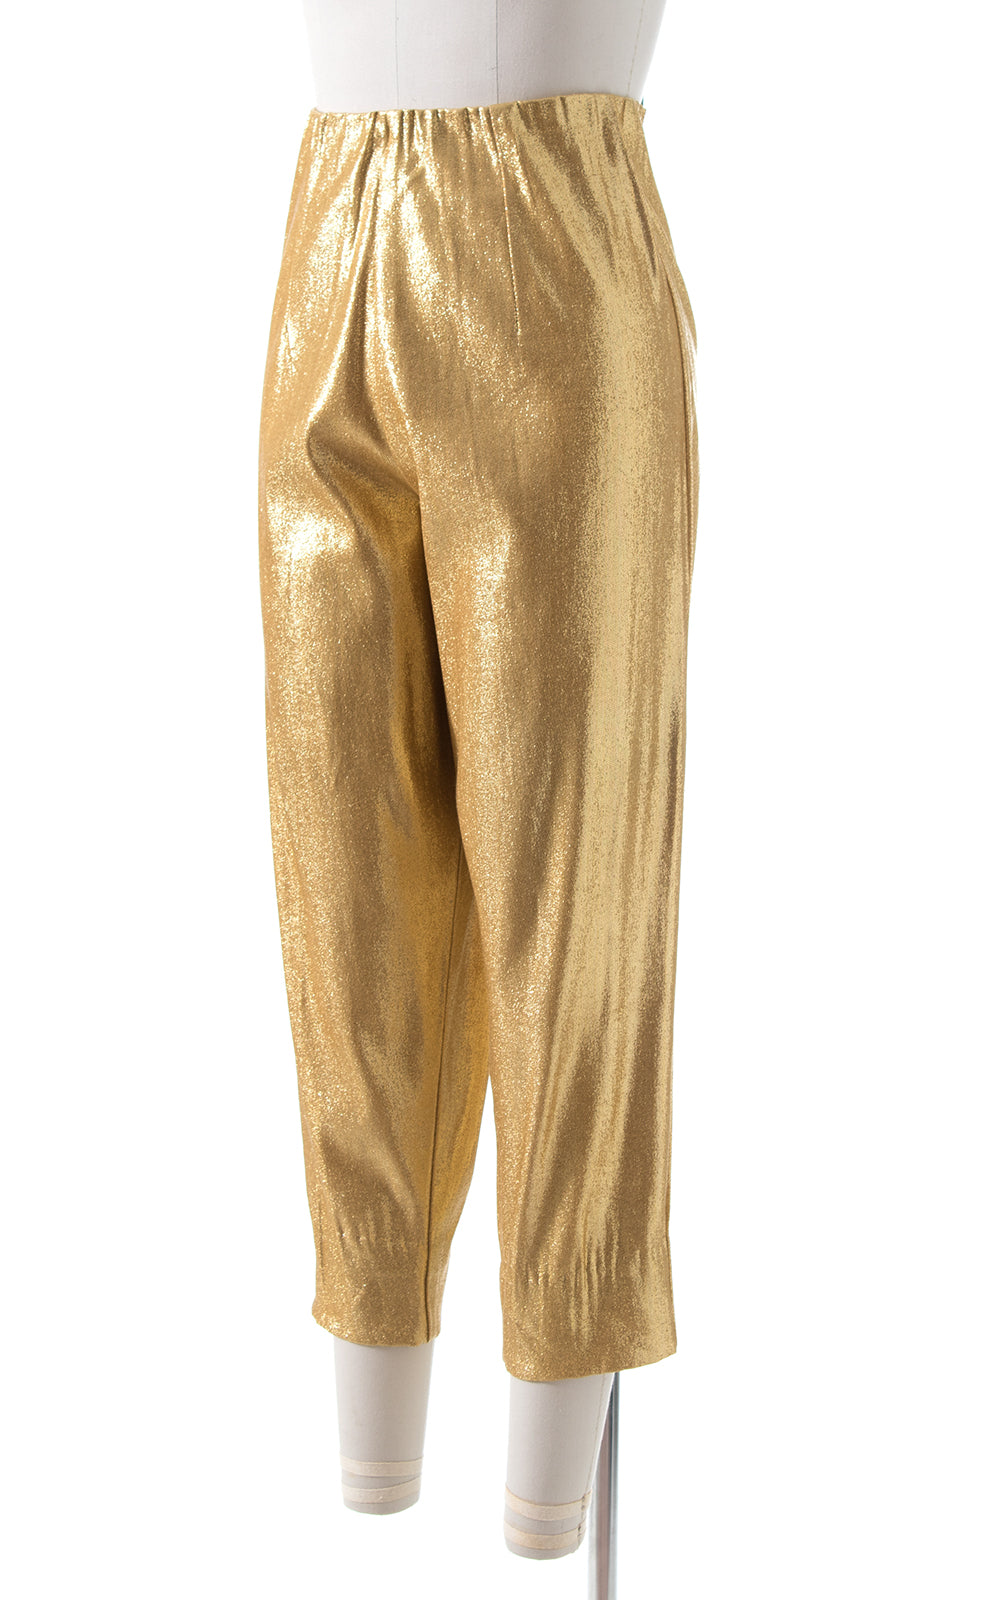 1950s Metallic Gold Lamé Cigarette Pants